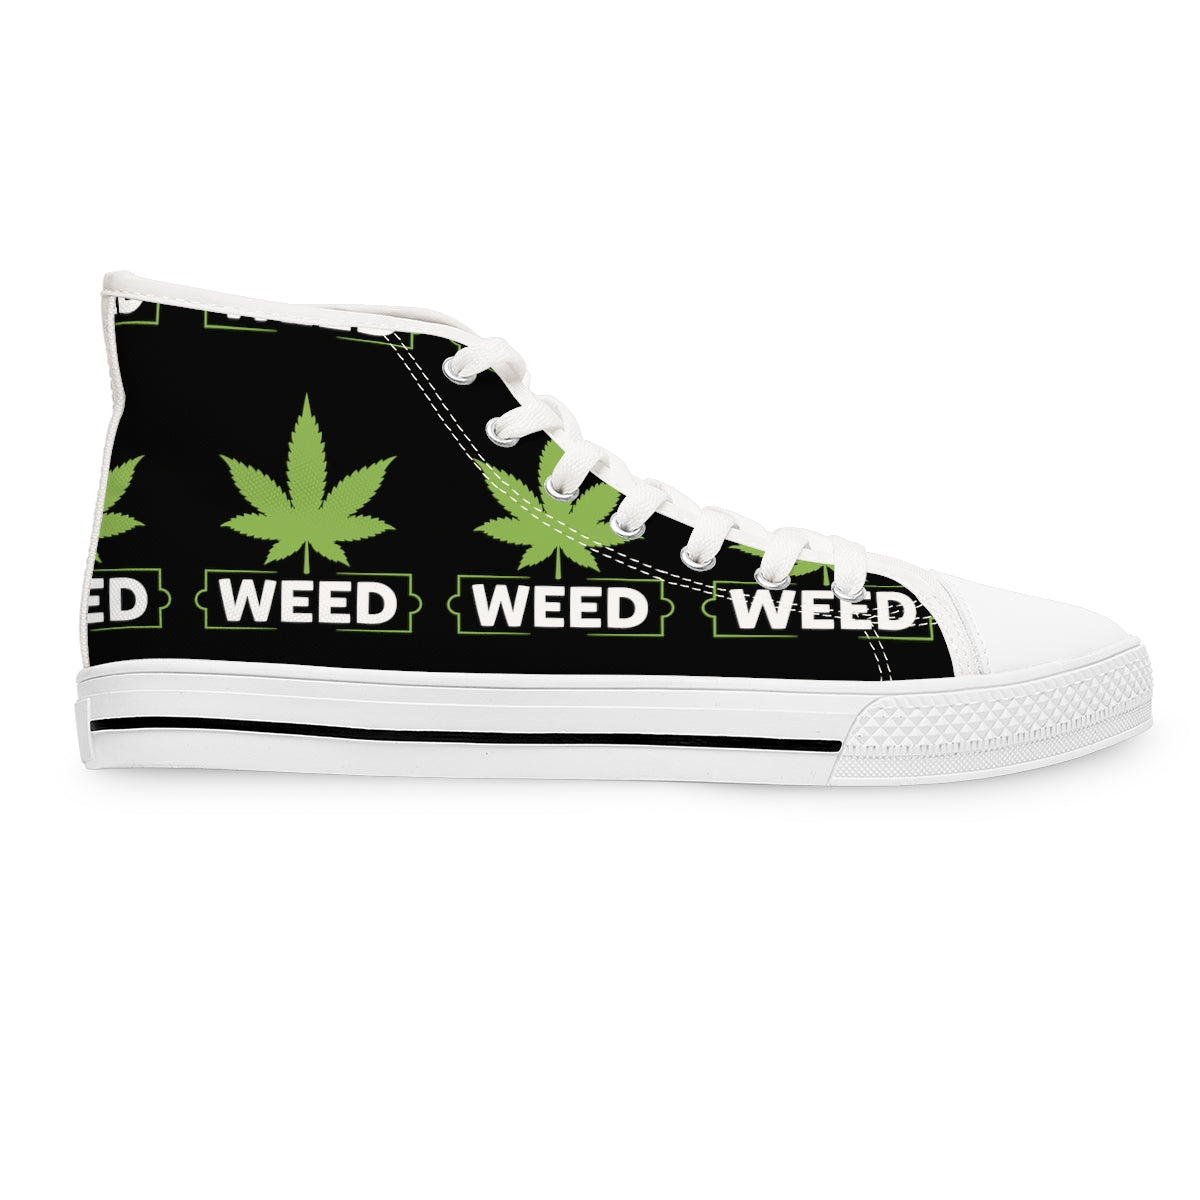 Marijuana Weed 420 Women's High Top Sneakers Gift For Her 420